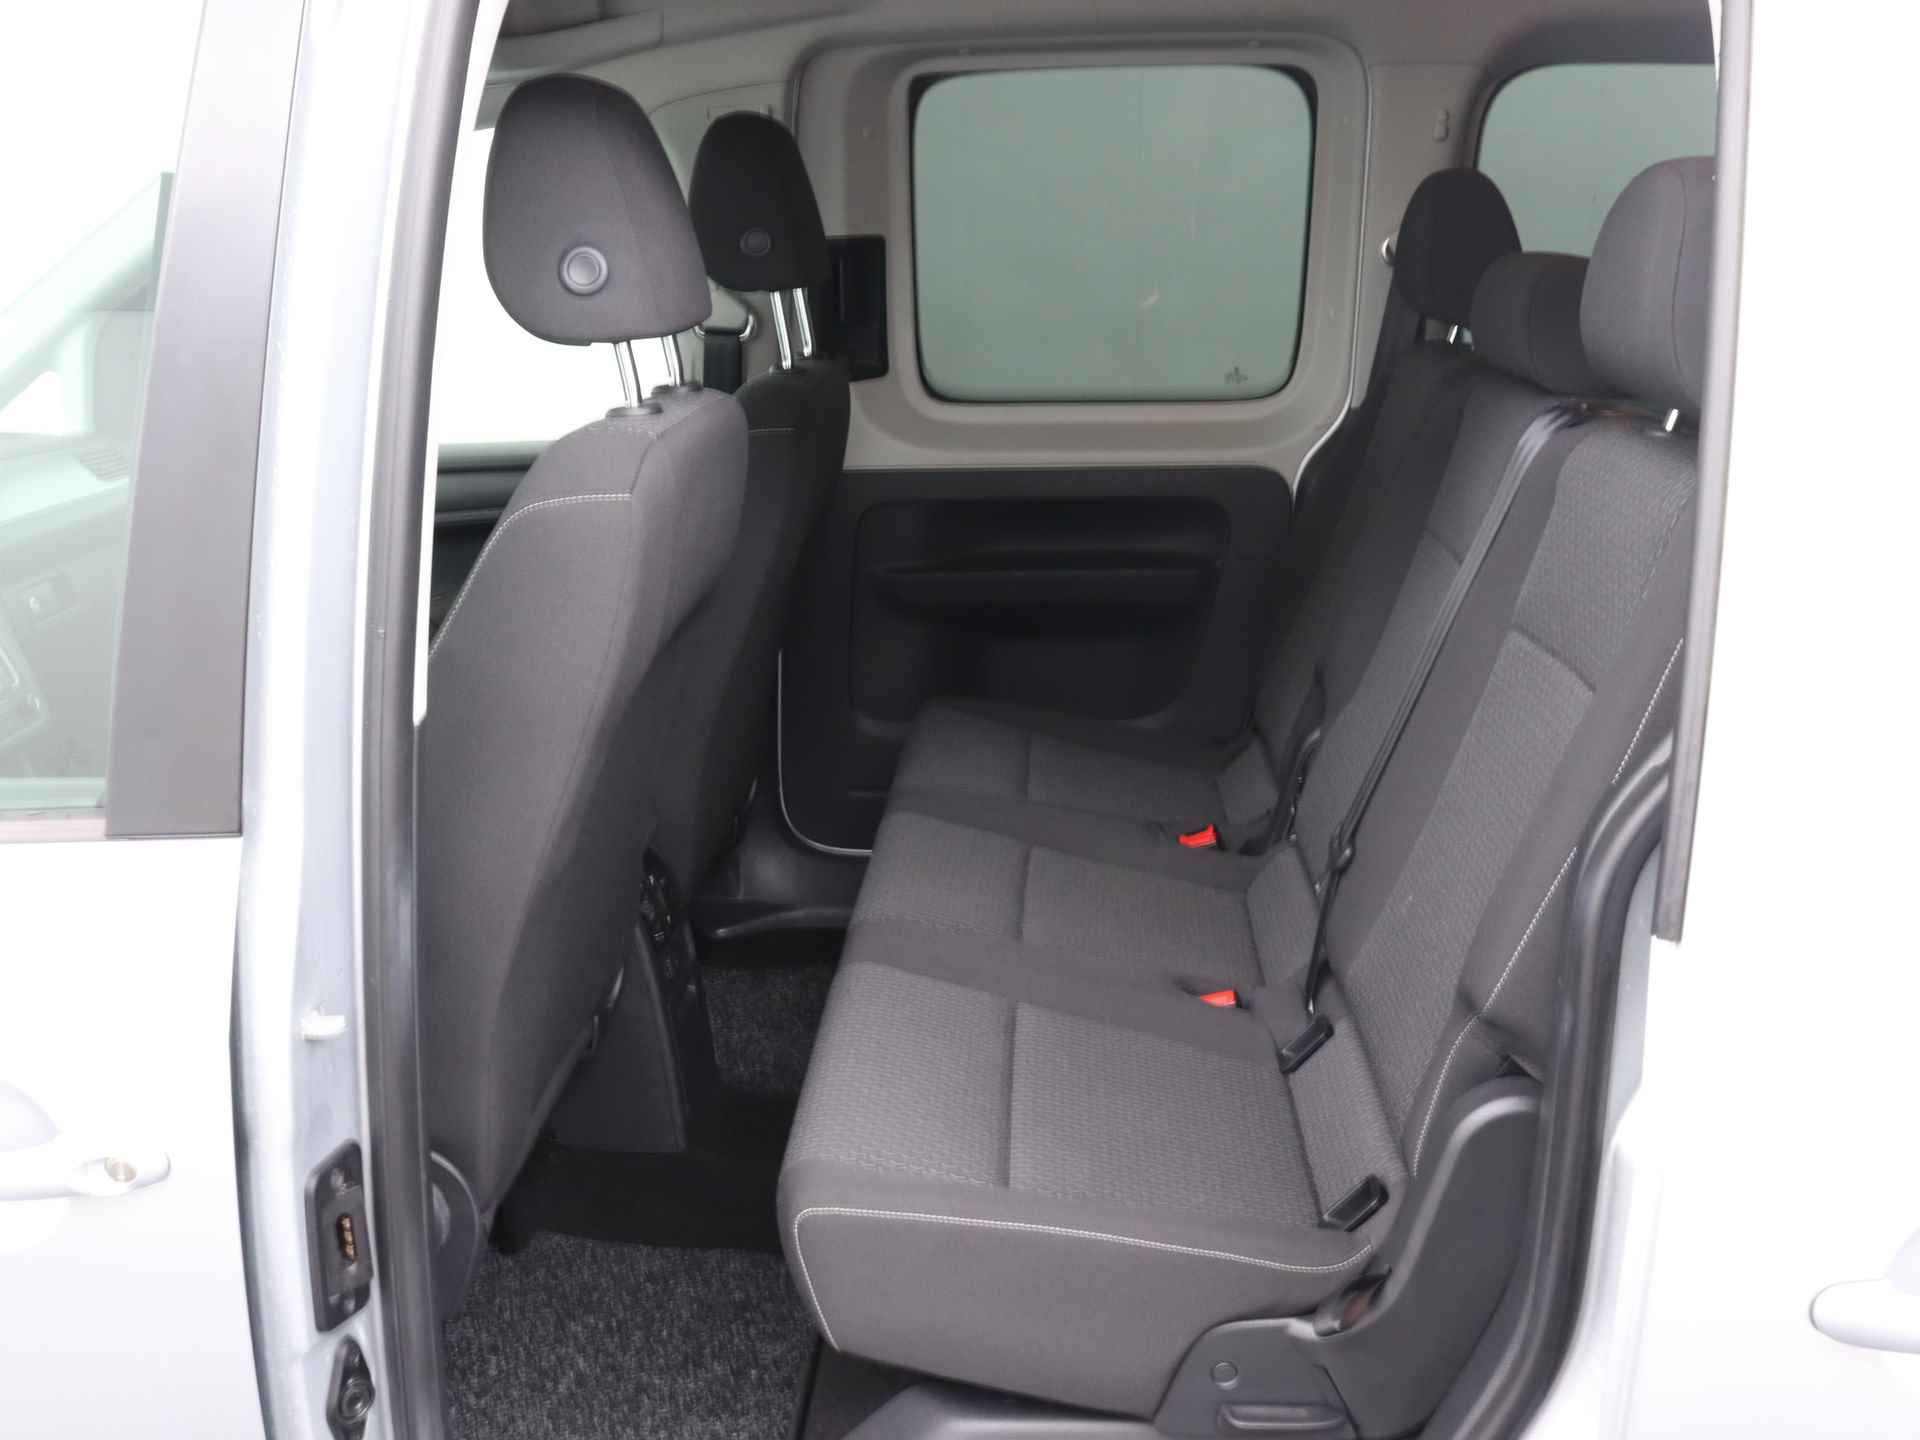 Volkswagen Caddy Maxi 1.0 TSI Trendline 5p Ingepland voor nieuwe bodemverlaging t.b.v. rolstoelvervoer (Prijs incl. bodemverlaging) - 17/36